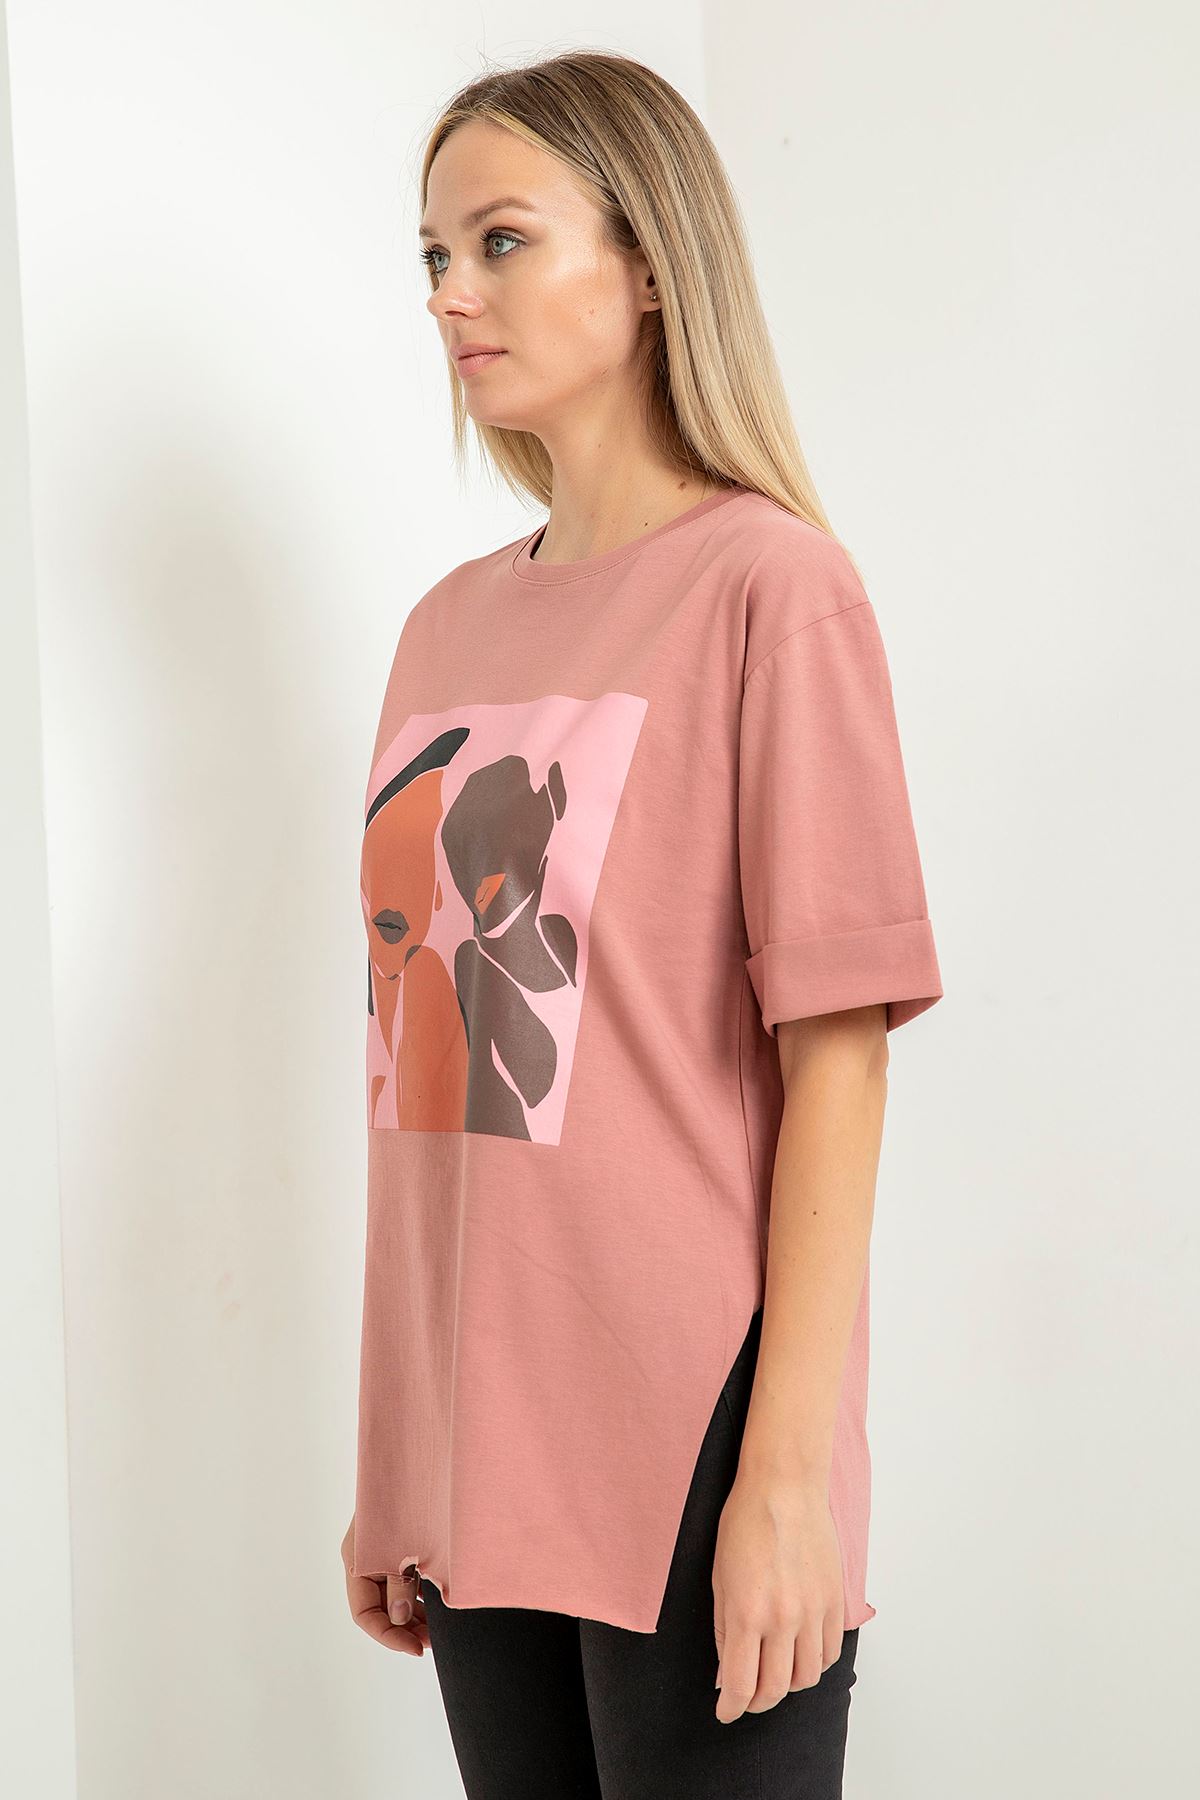 Short Sleeve Below Hip Comfy Fit Cloud Print Women'S T-Shirt - Light Pink